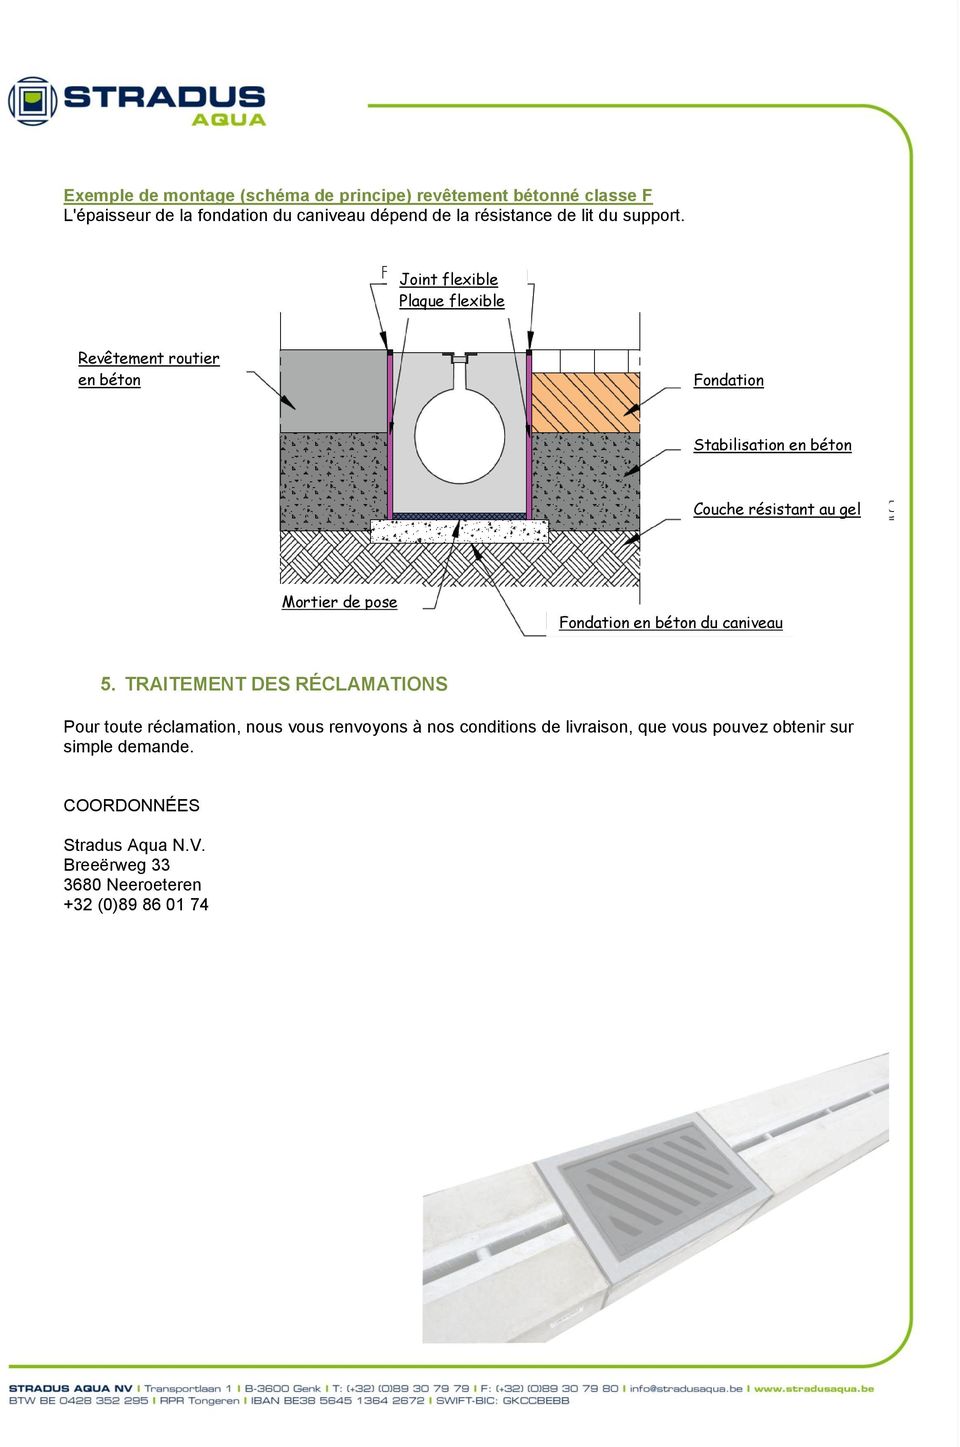 Joint flexible Plaque flexible Revêtement routier en béton Fondation Stabilisation en béton Couche résistant au gel Fondation en